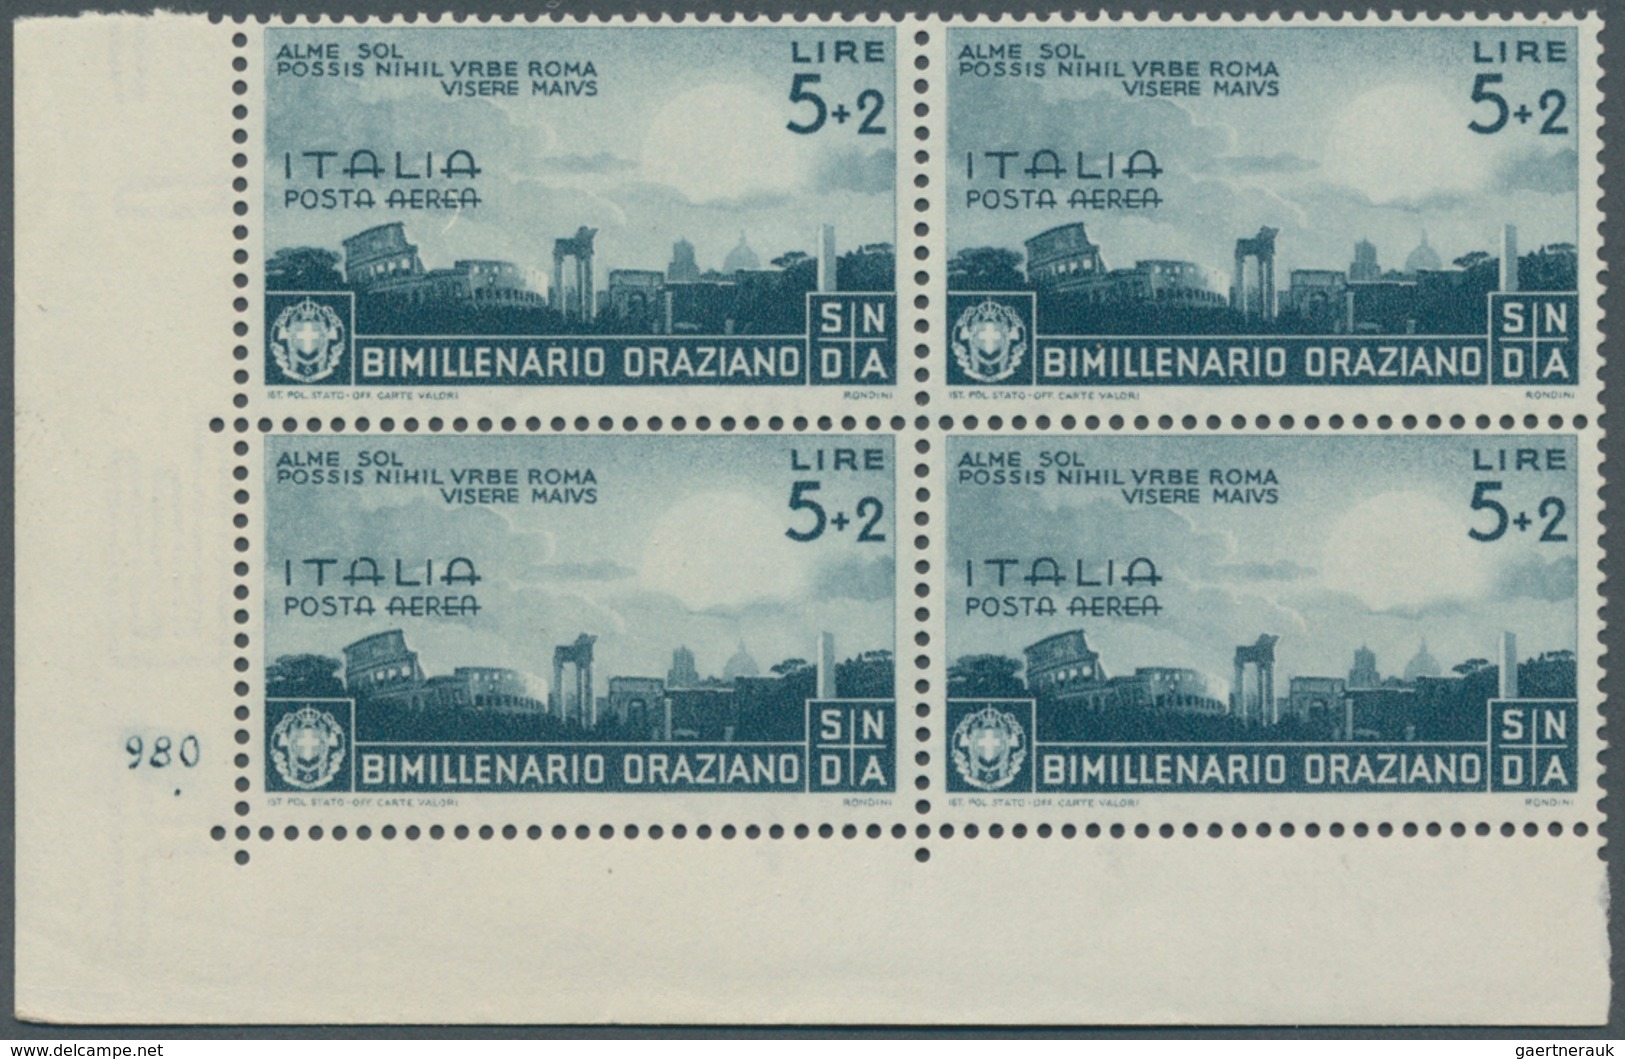 Italien: 1936, Horatio, 25c. To 5l. Airmail Stamps (Sass. A95/99), U/m Assortment: A95 (28), A96 (27 - Sammlungen